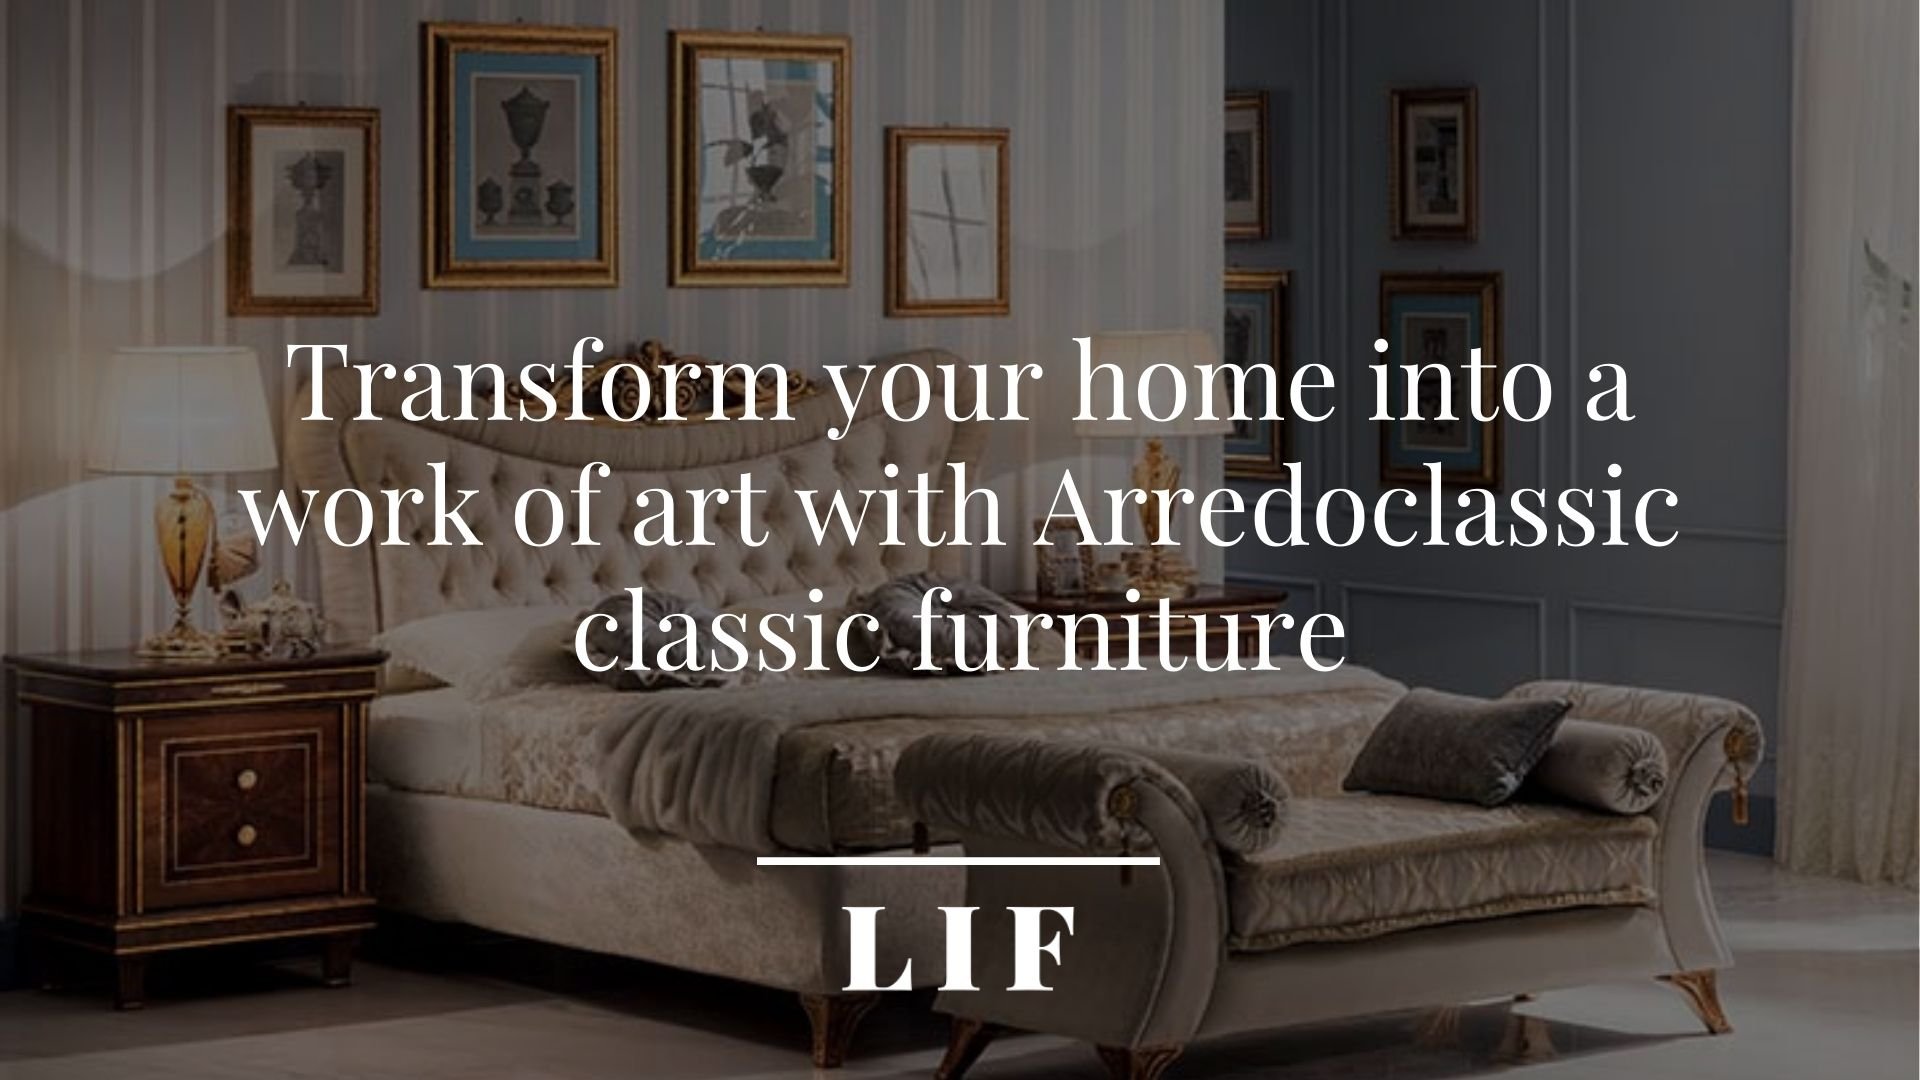 Arredoclassic classic furniture